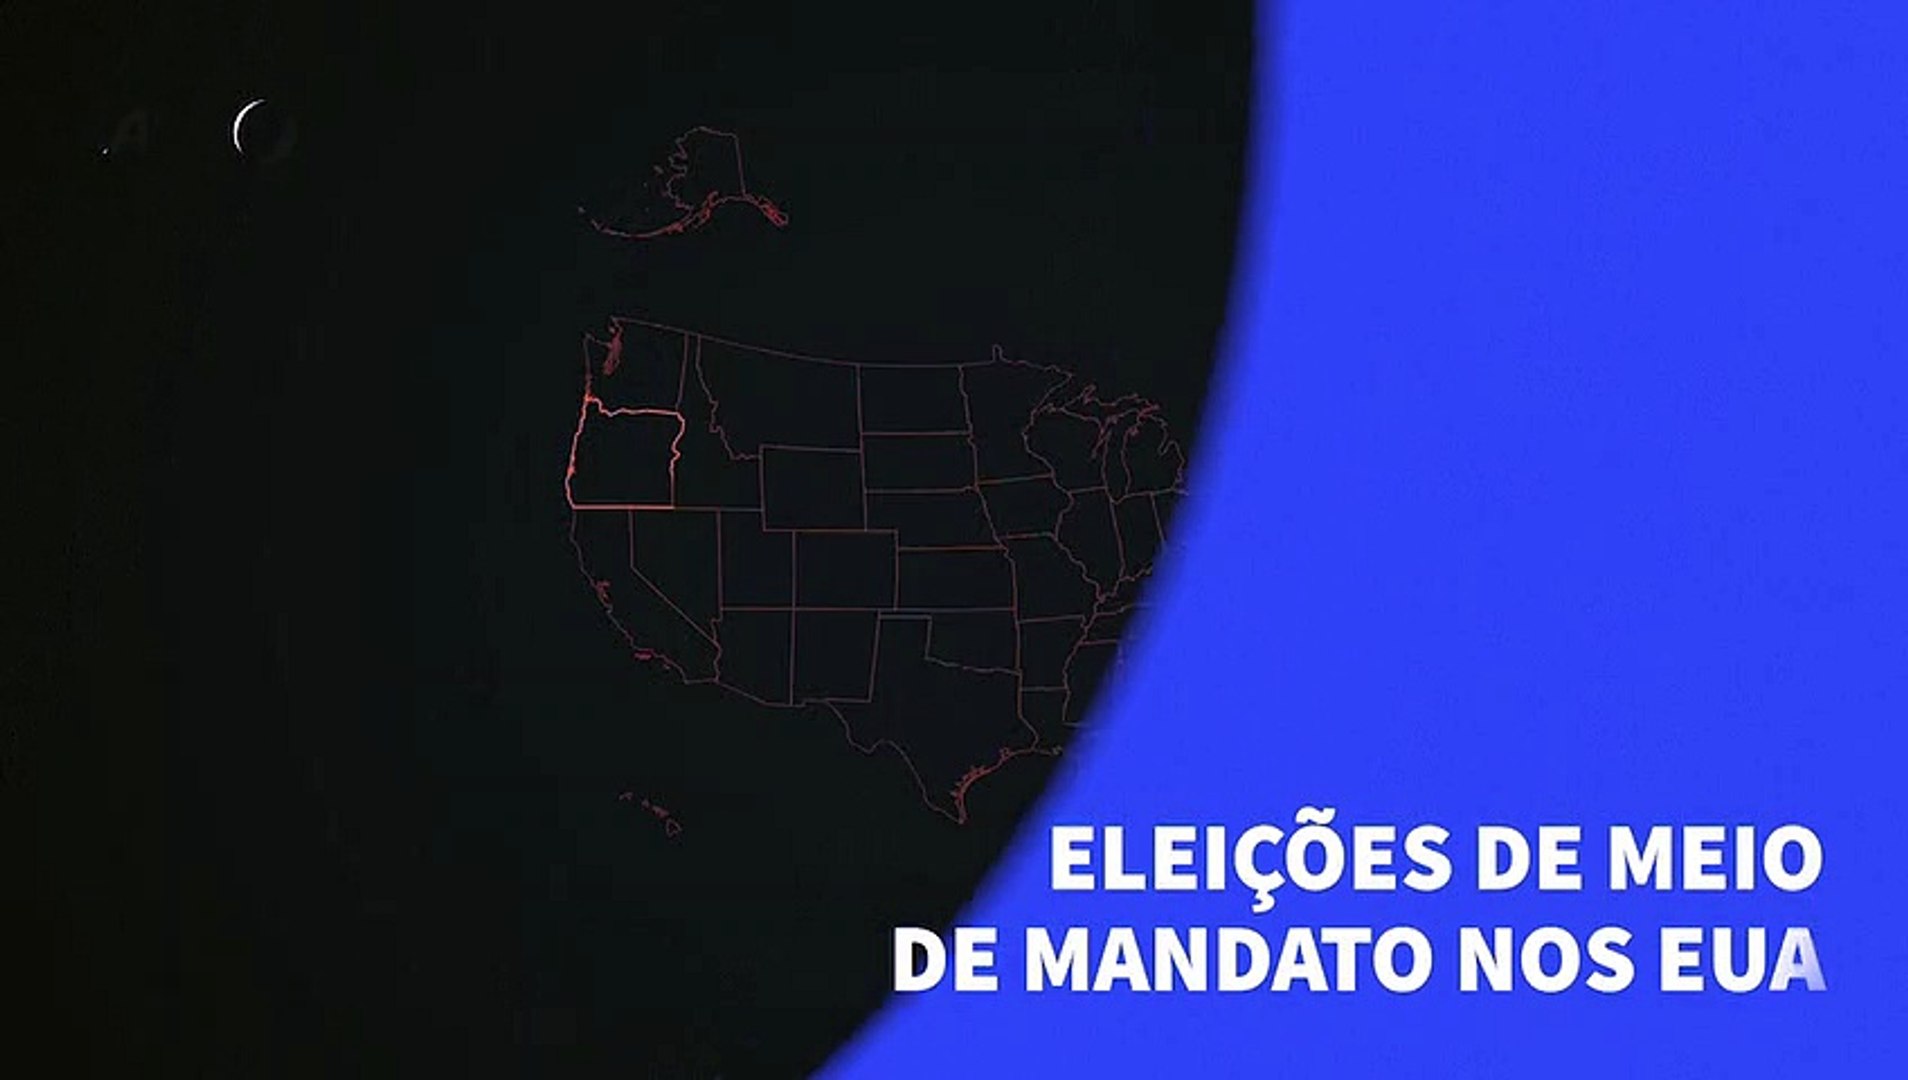 Eleições de meio de mandato nos EUA - Vídeo Dailymotion